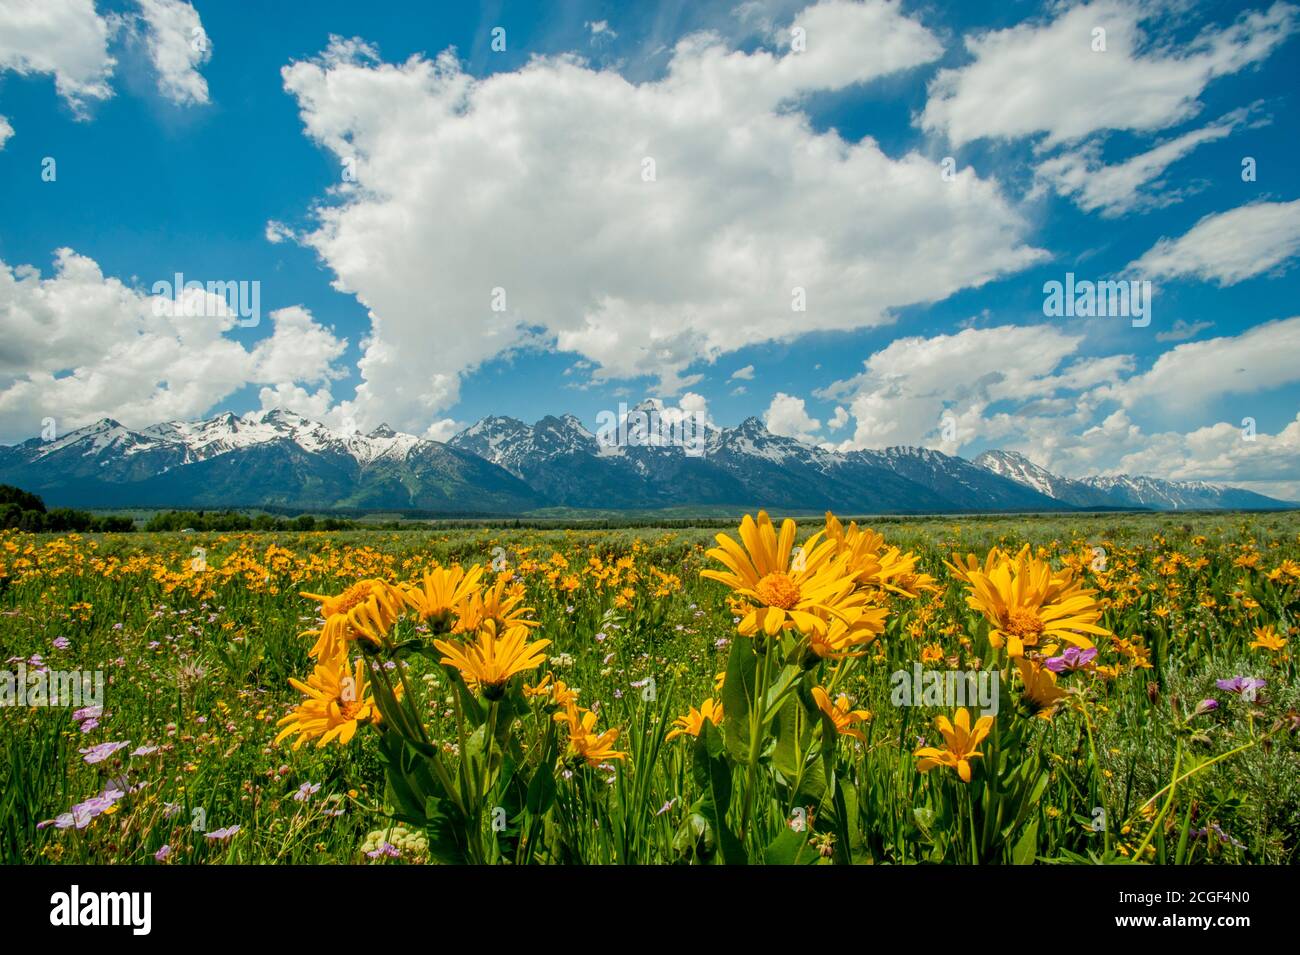 Paysage avec les montagnes du Grand Teton avec le balsamroot d'Arrowleaf (Balsamorhiza sagittata ) Et géranium fleurs sauvages au premier plan dans le Grand T. Banque D'Images